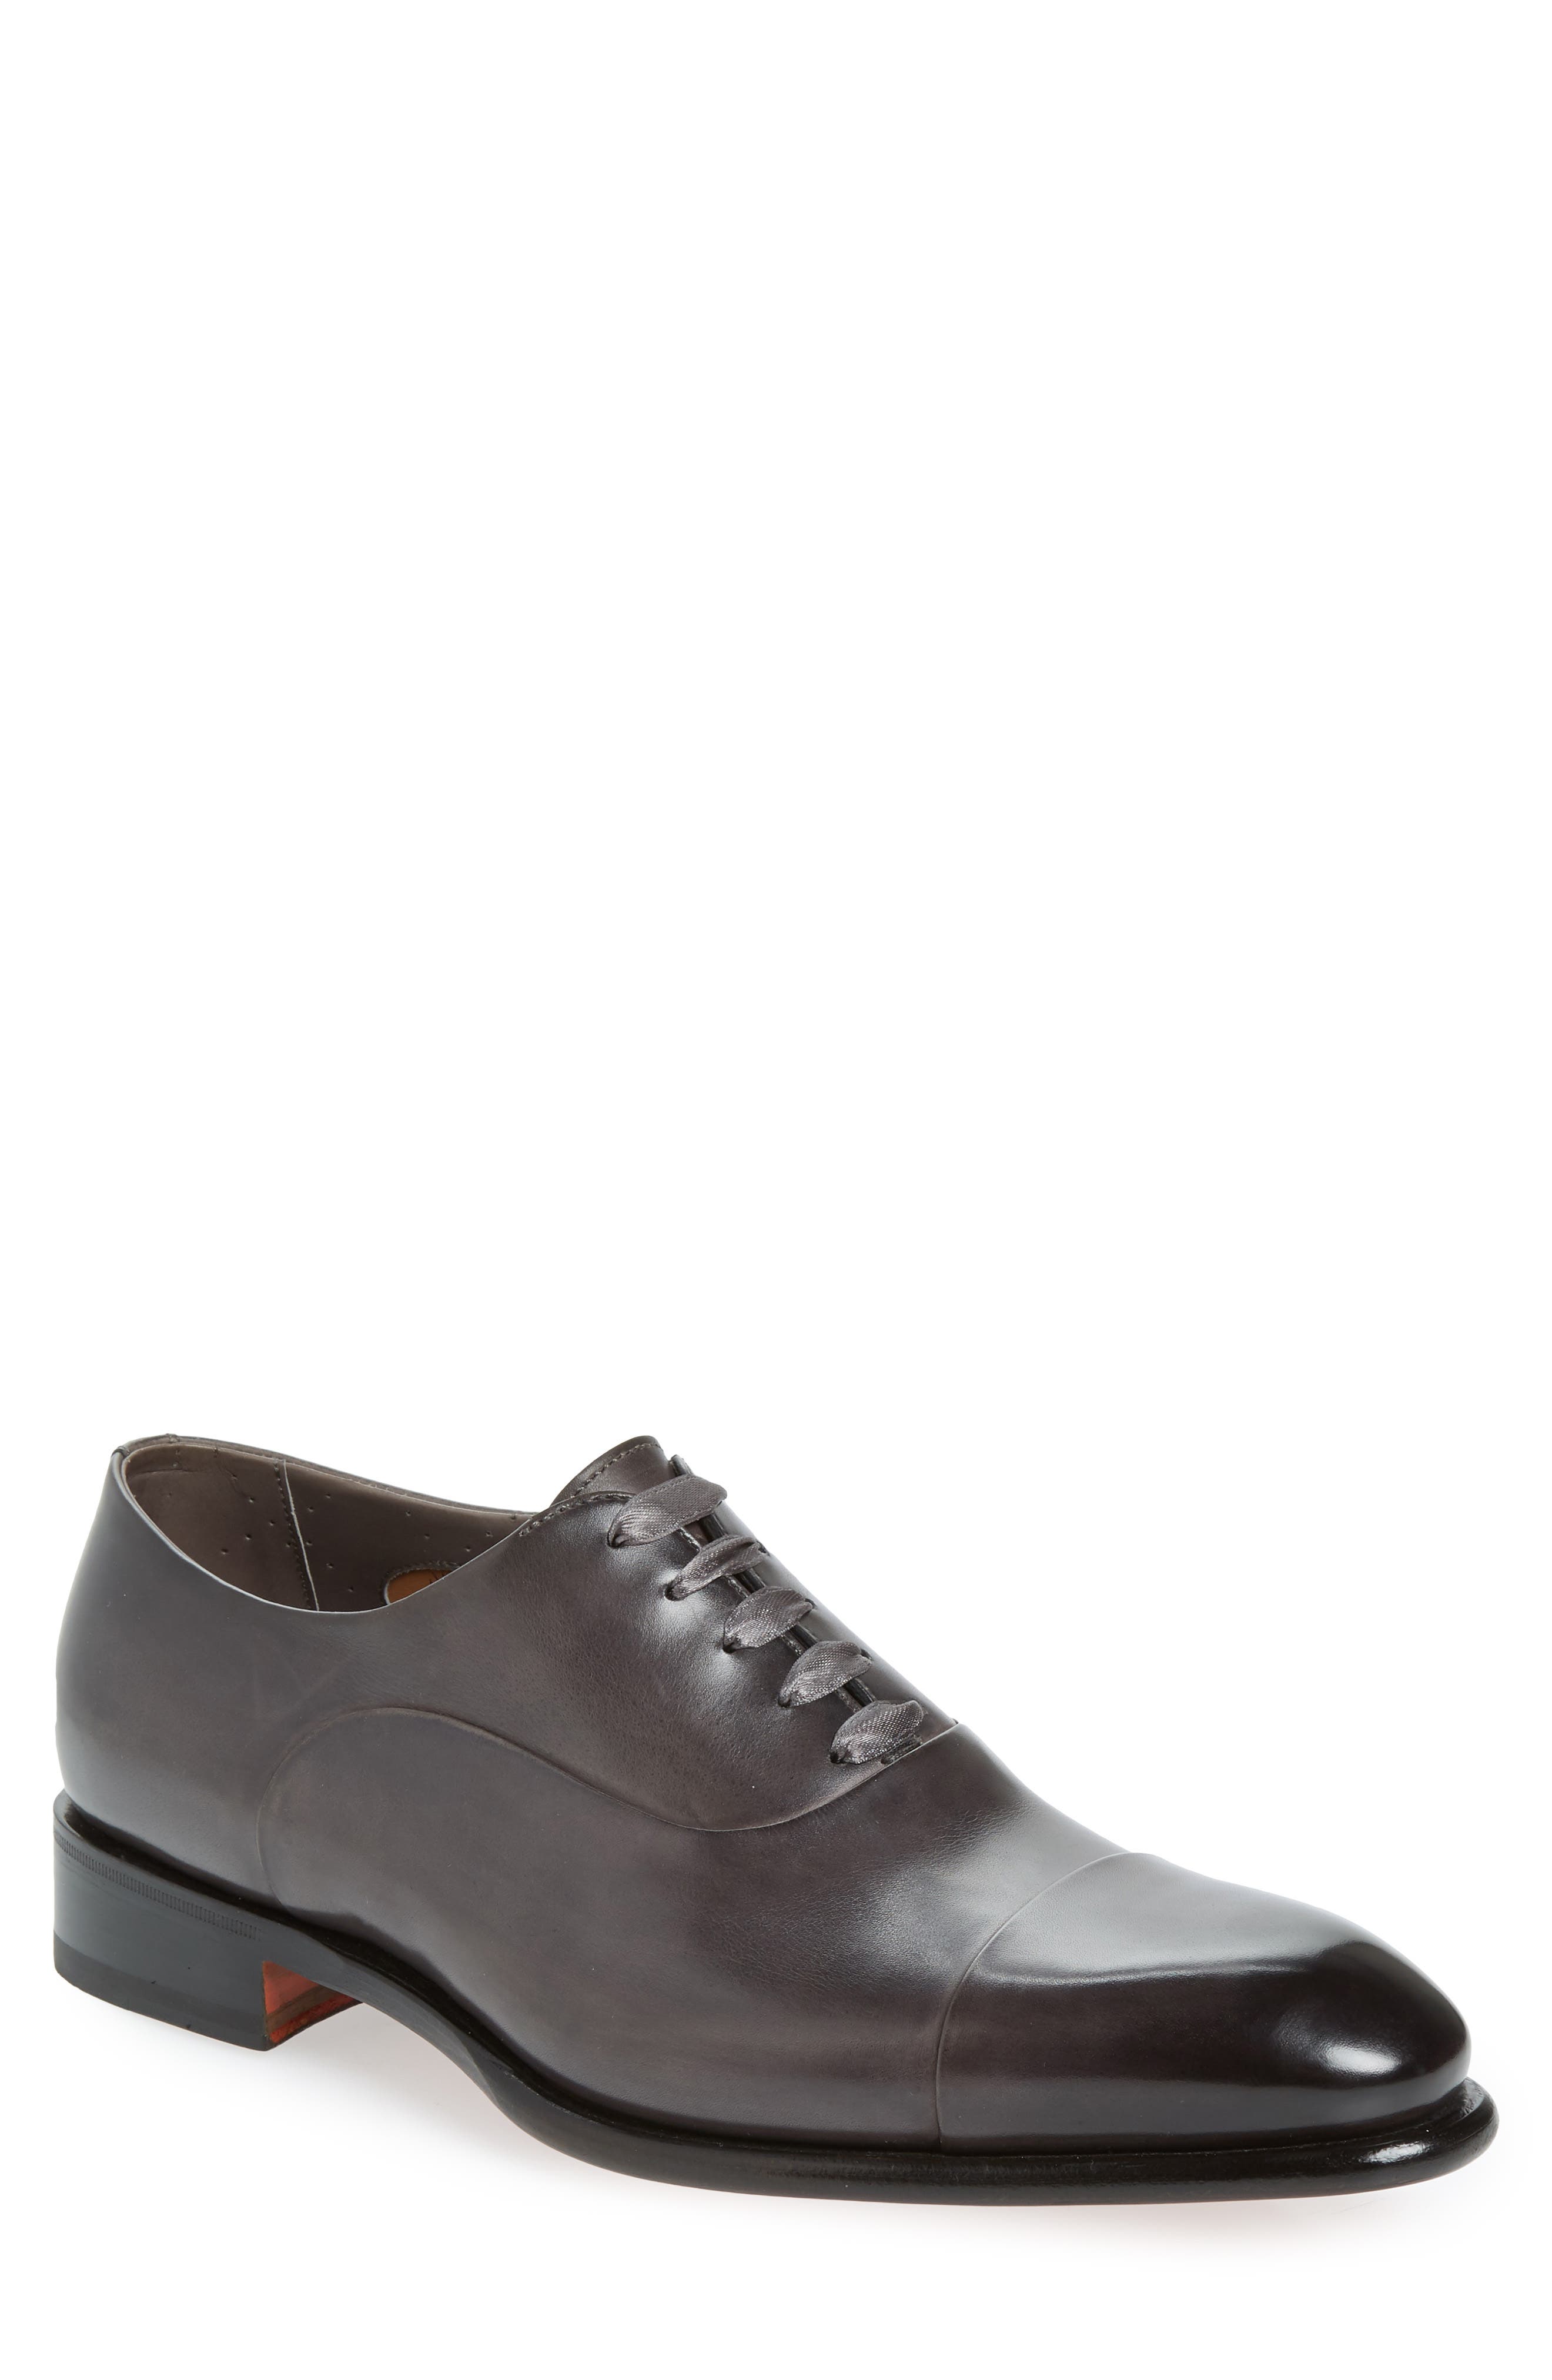 Santoni Black Buoyancy Leather Oxford Shoes for Men Mens Shoes Lace-ups Oxford shoes 